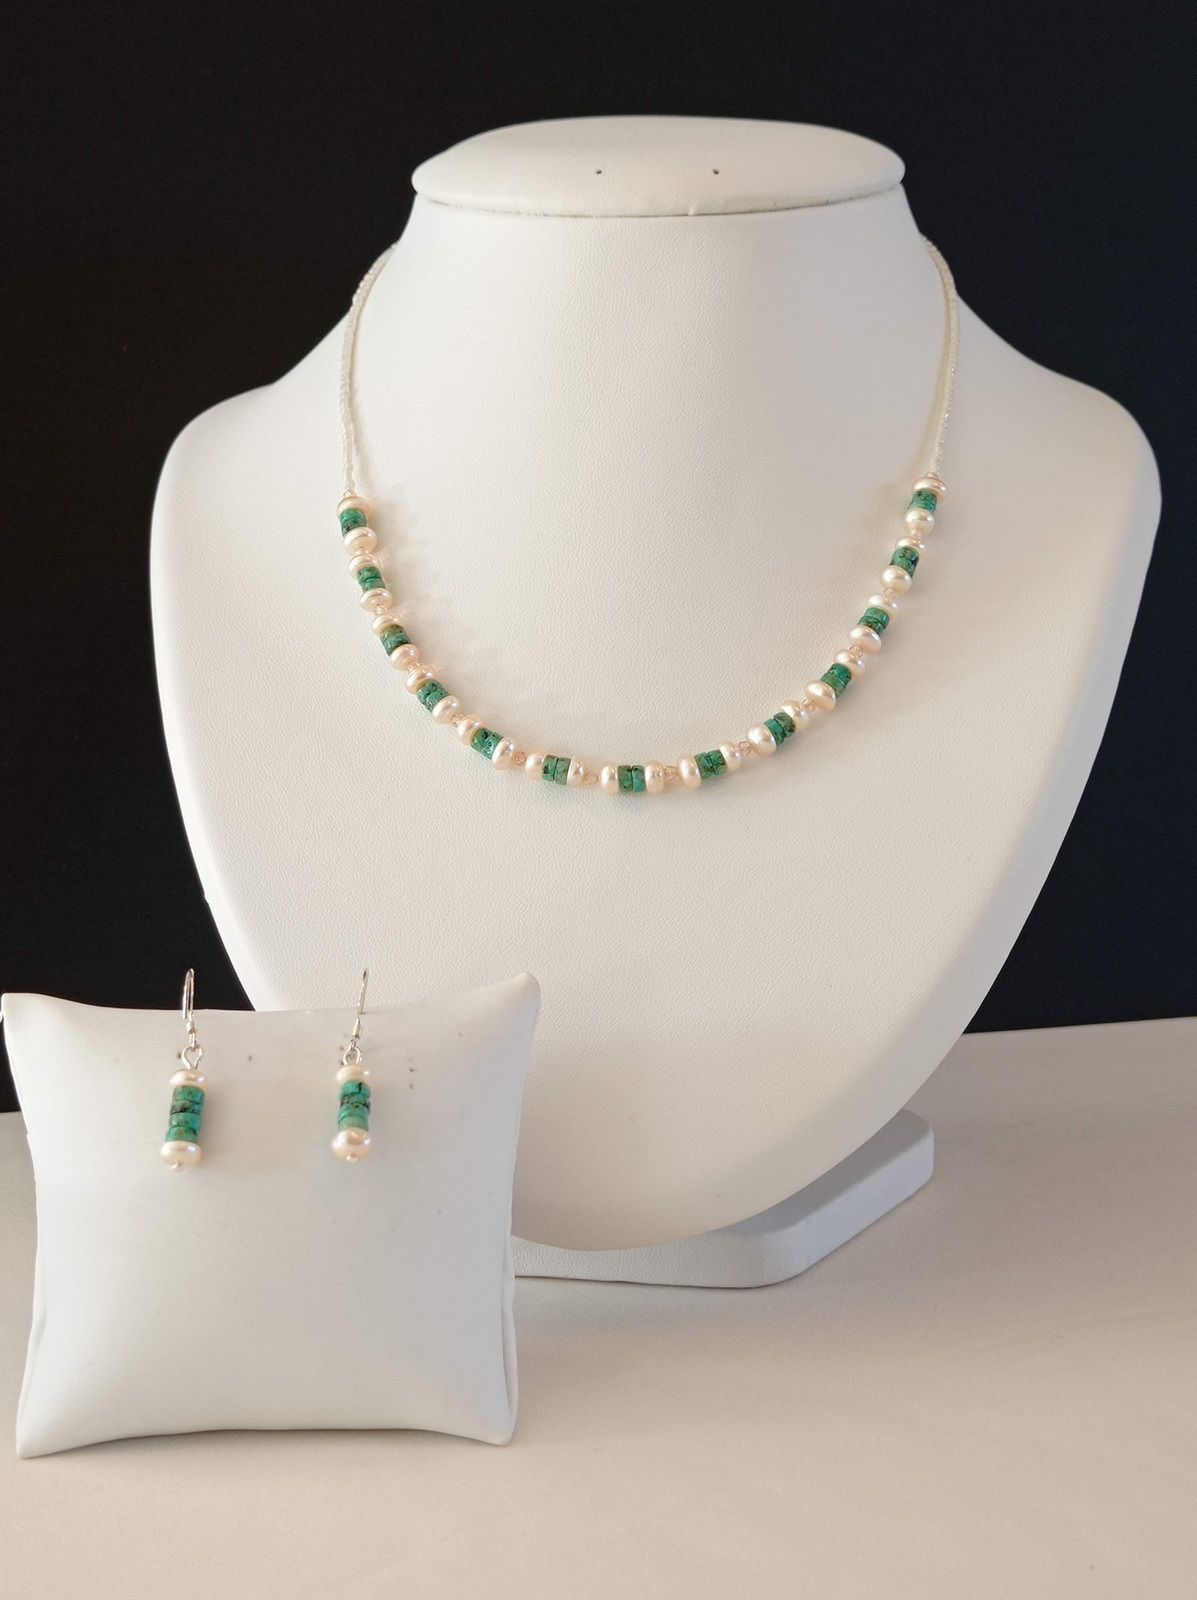 REF. VN207- Collier perles de verre, perles d'eau douce, turquoise africaine et zirconium , avec chaîne de rallonge . Long entre 39 et 45,5 cm. BO crochets argent 925- COLLIER 32€- BO 16€.